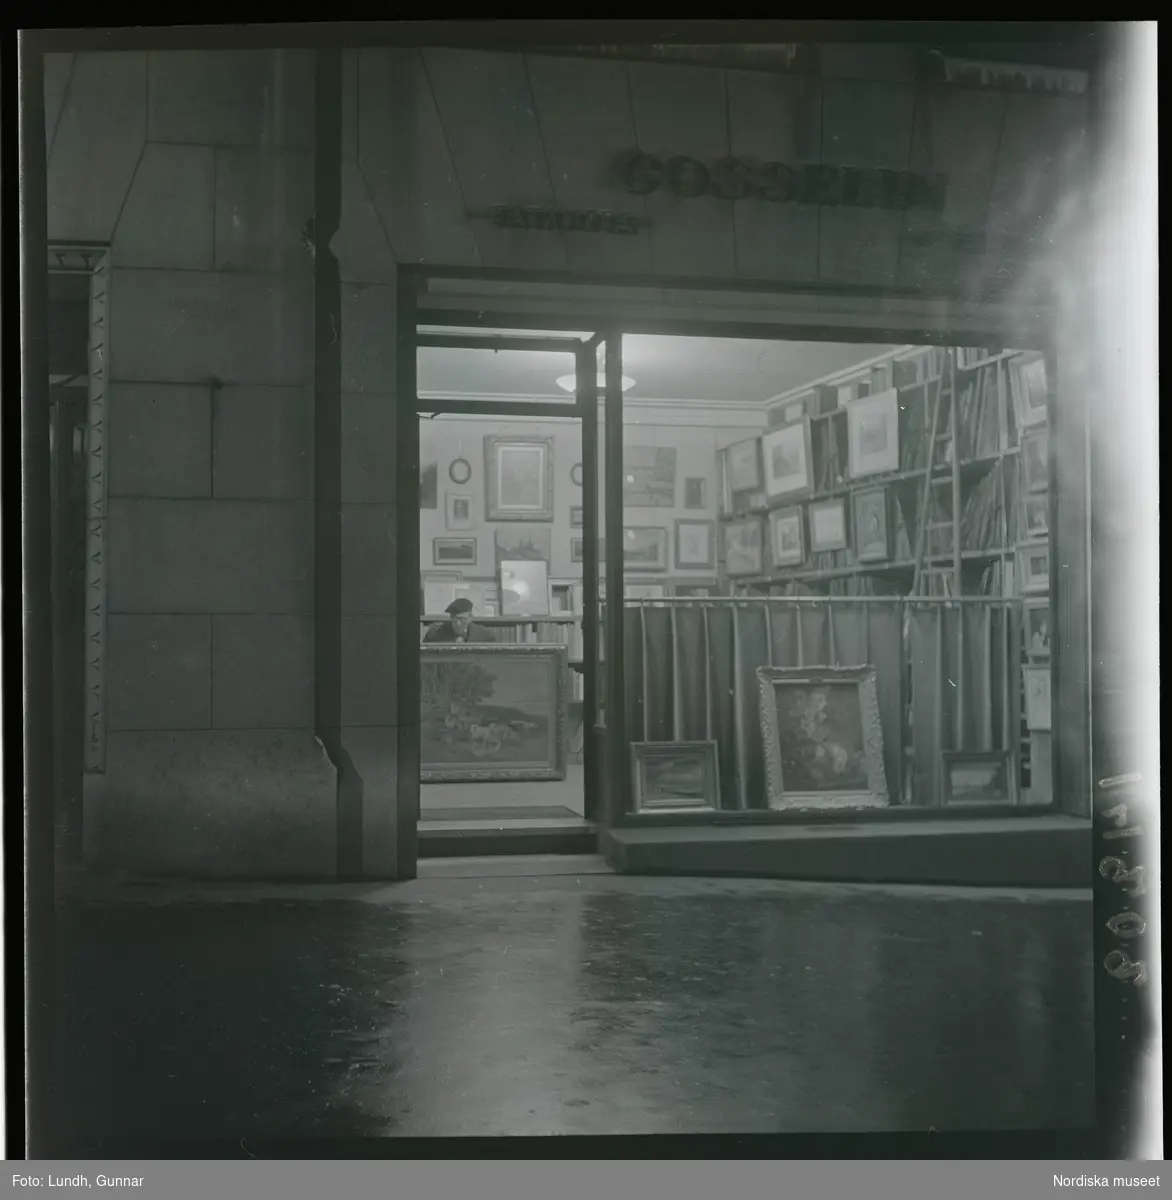 1950. Paris. En man sittter inne i en butik med konst, kväll